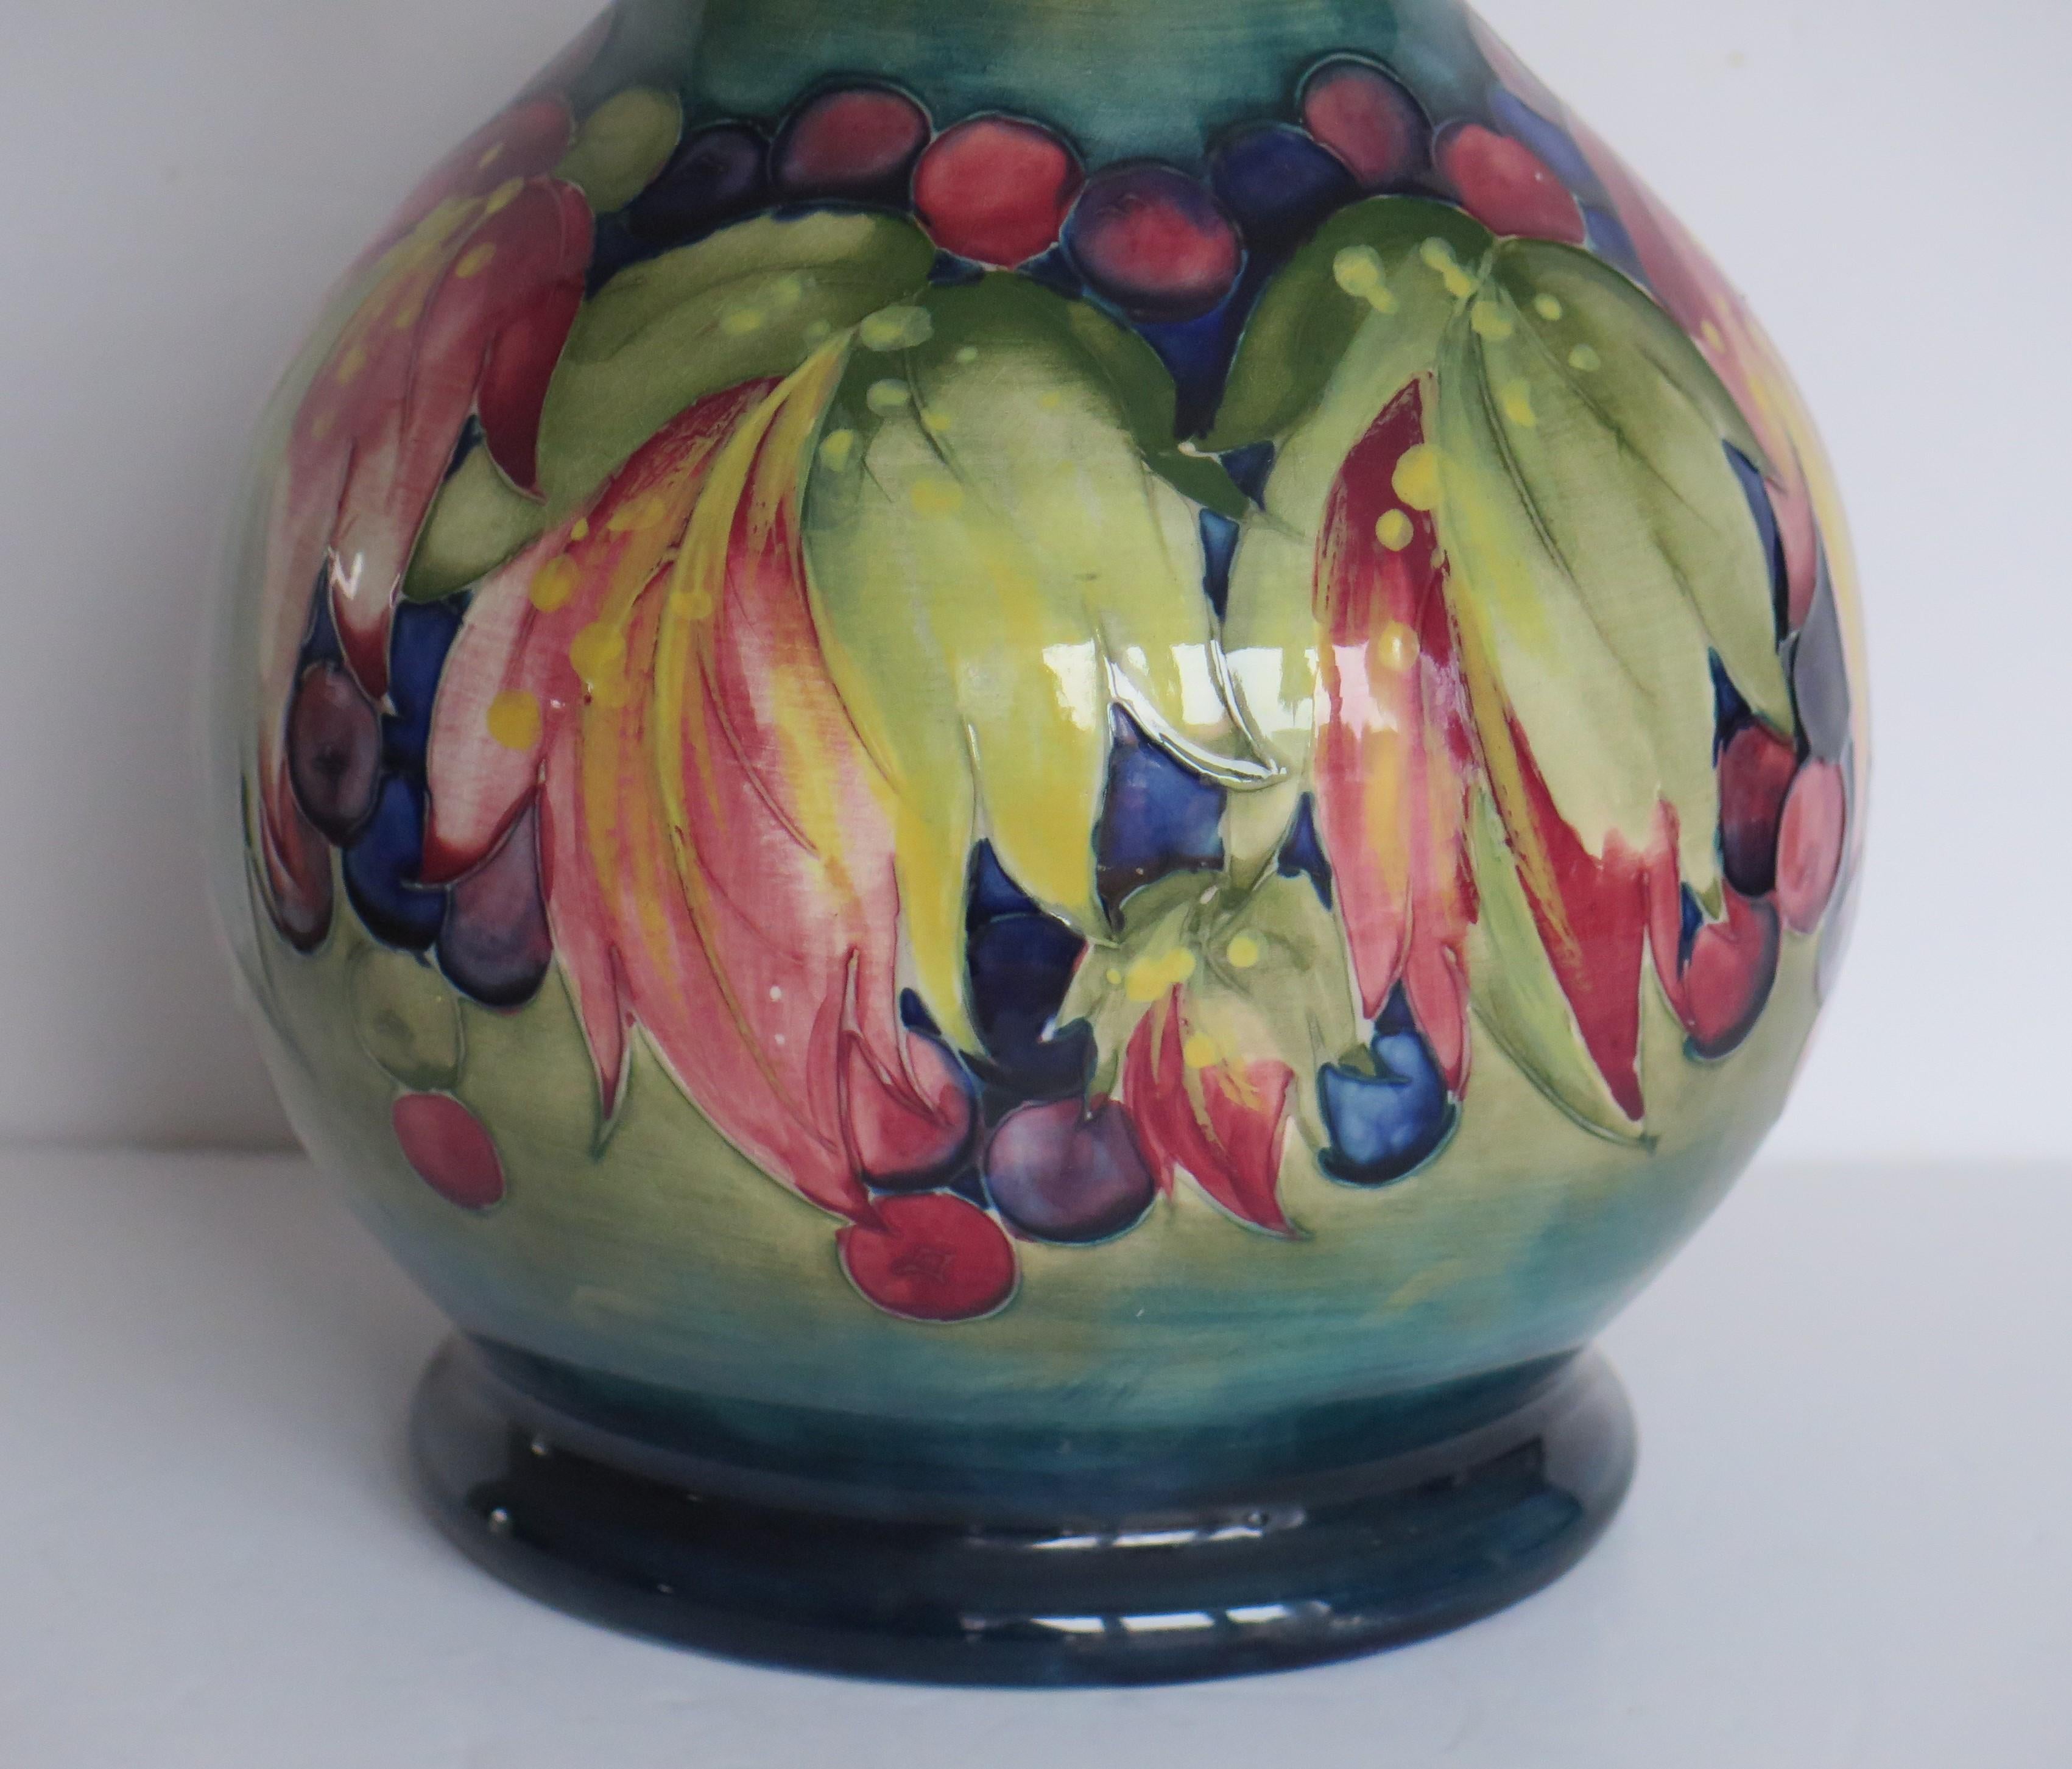 Dies ist ein sehr gutes frühes Beispiel für eine große Vase von William Moorcroft, der Moorcroft Pottery, mit dem Muster Autumn Leaves, aus der Zeit um 1930.

Das Muster ist als Herbstblätter bekannt, wird aber neuerdings auch als Beeren- und